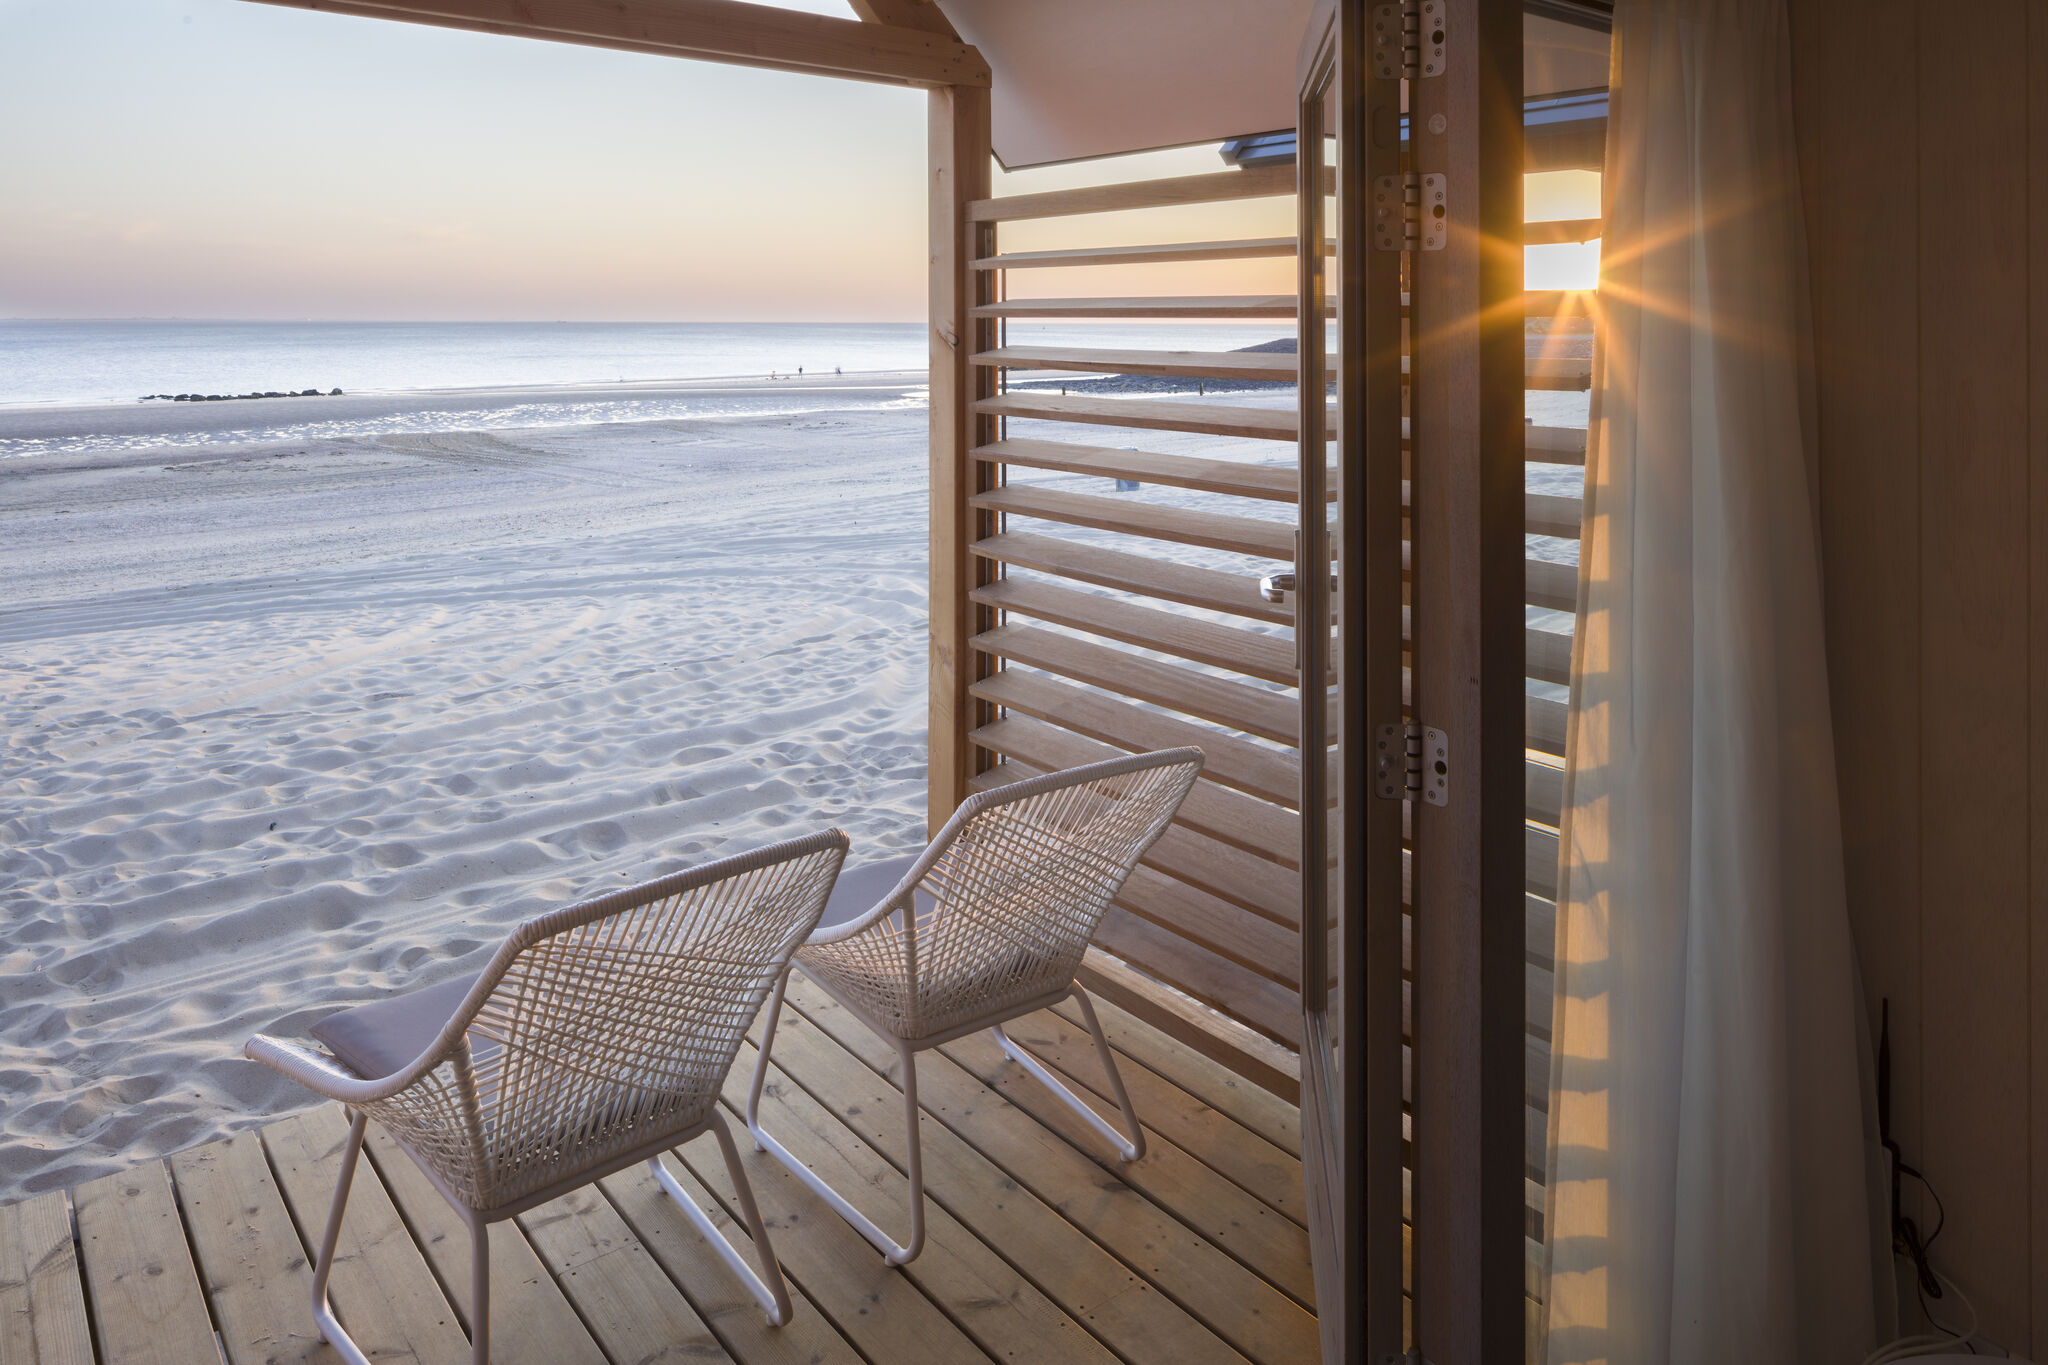 Maison de vacances magnifiquement située sur la plage propre de Vlissingen